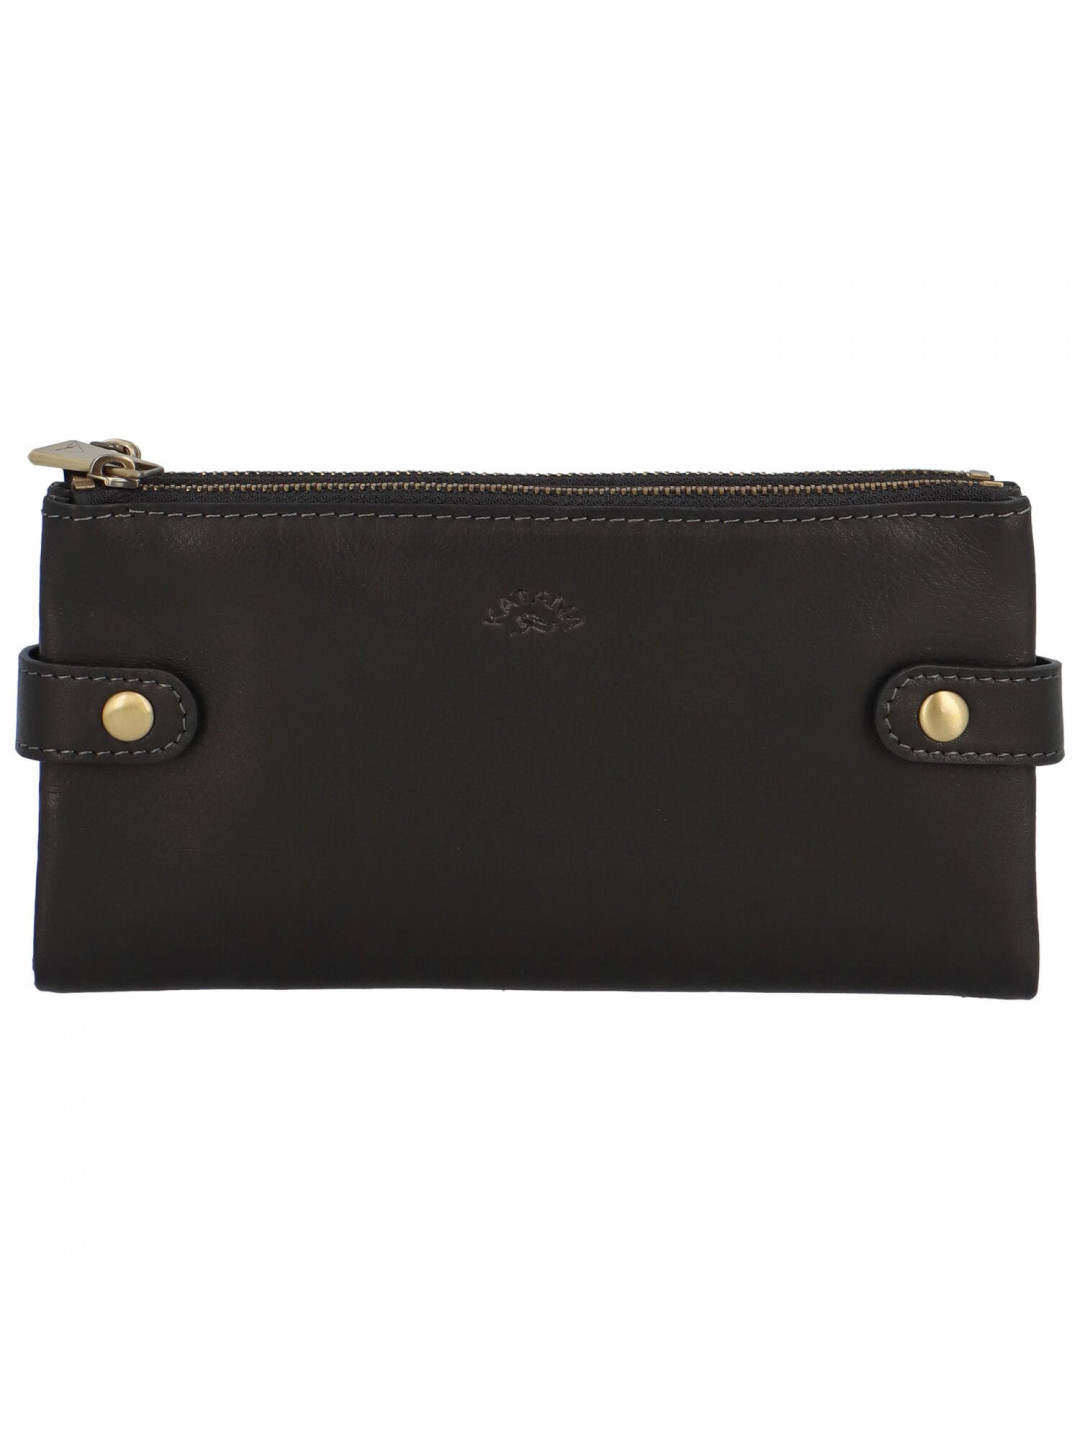 Luxusní dámská kožená peněženka Katana Lola černá